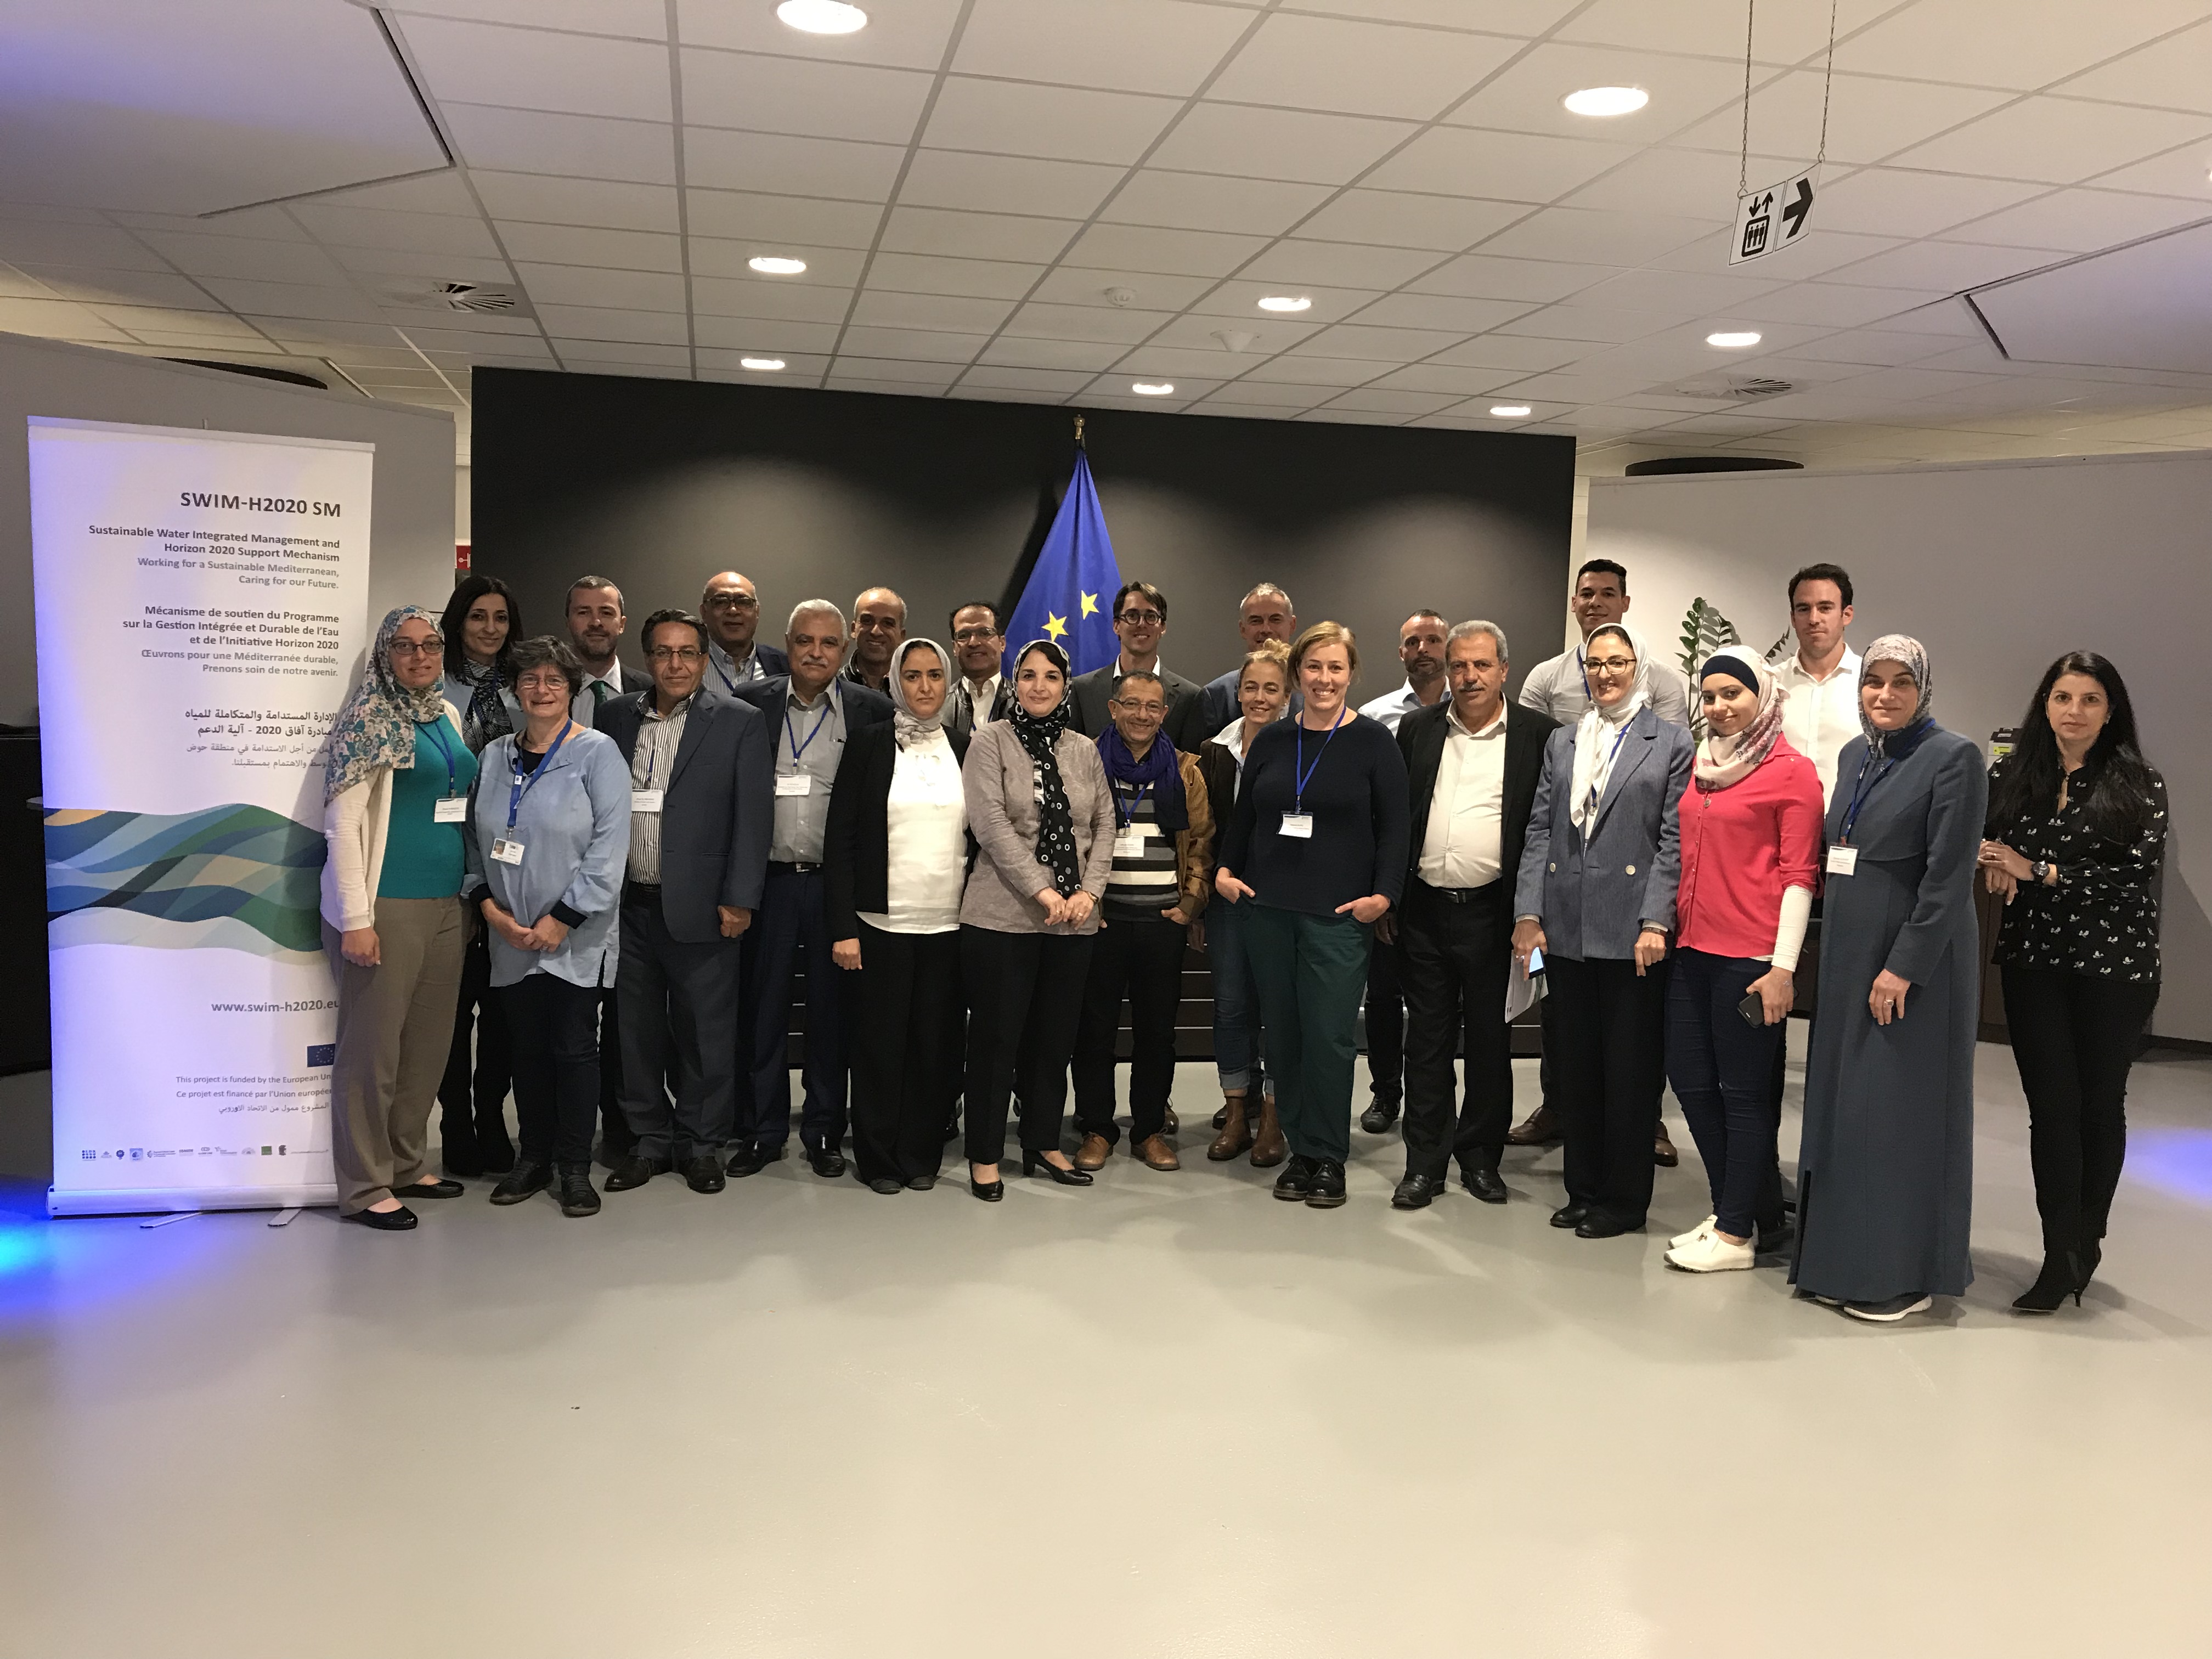 2-3 octobre 2018, Bruxelles, Belgique – SWIM-H2020 SM Formation régionale sur le terrain sur la bonne gouvernance de l’eau, axée sur les aspects règlementaires et l’élaboration, le suivi et l’application de politiques